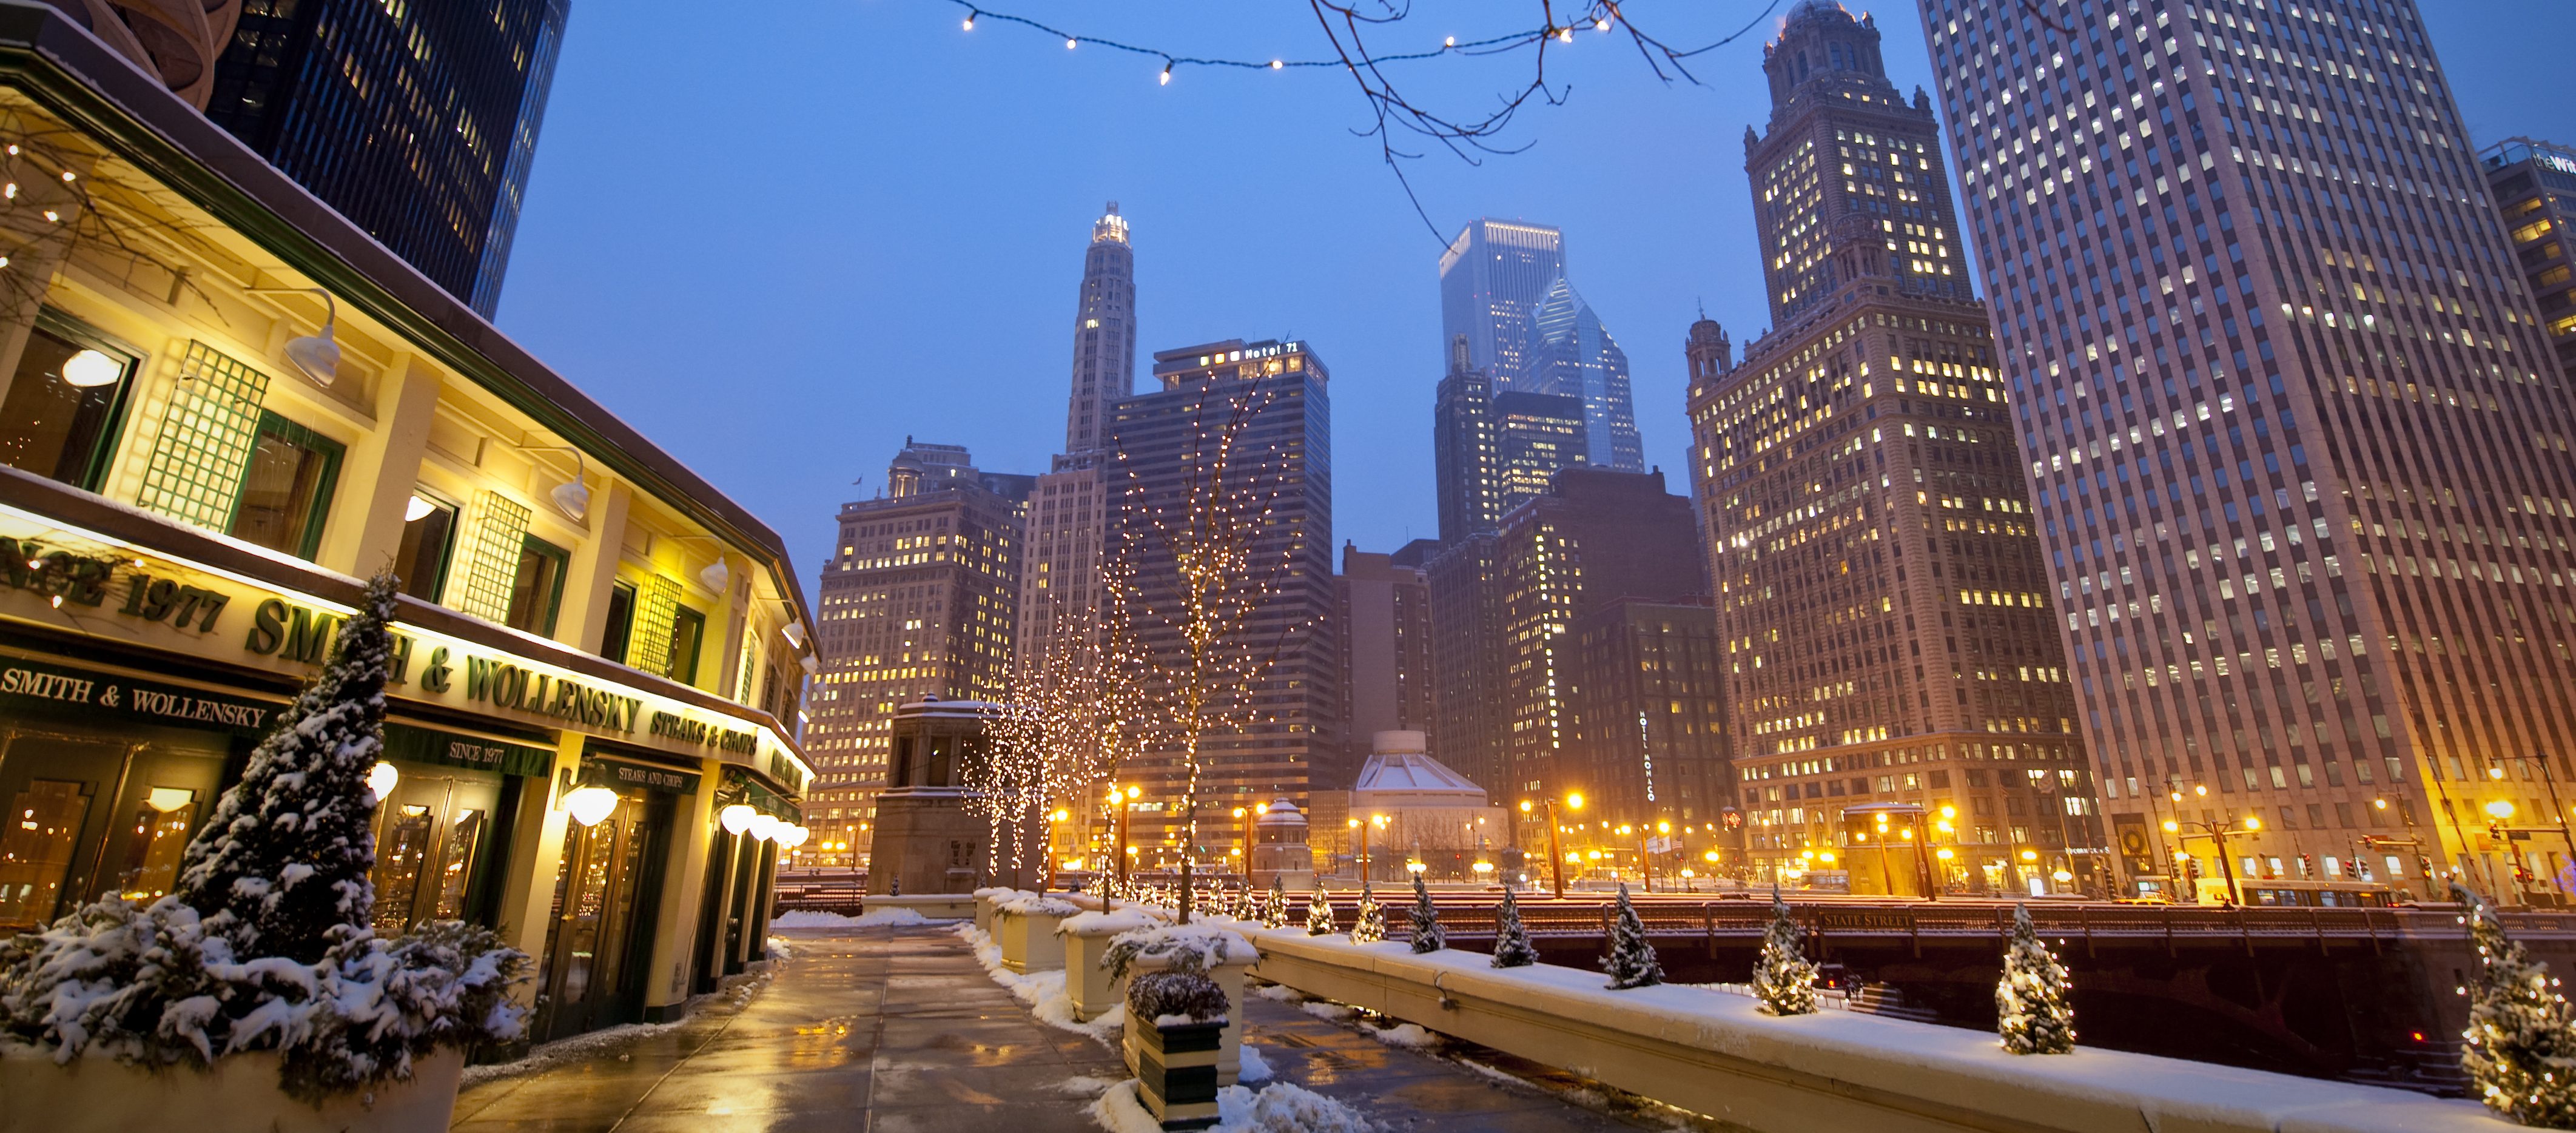 Winter in Chicago Top 10 Winter Activities in Chicago SmarterTravel